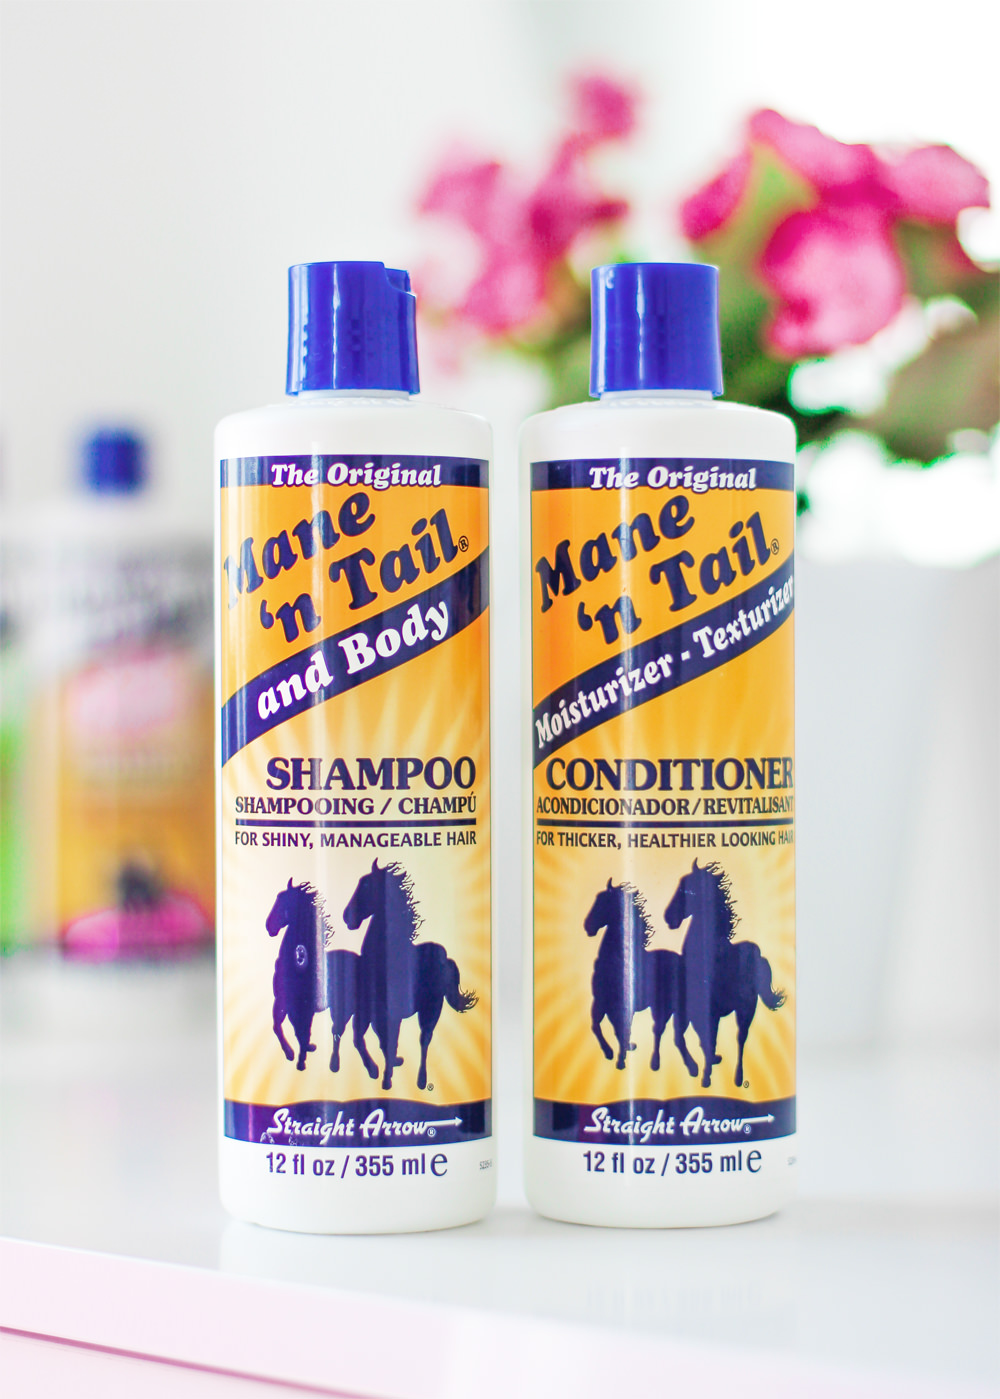 szampon szampon dla koni mane n tail